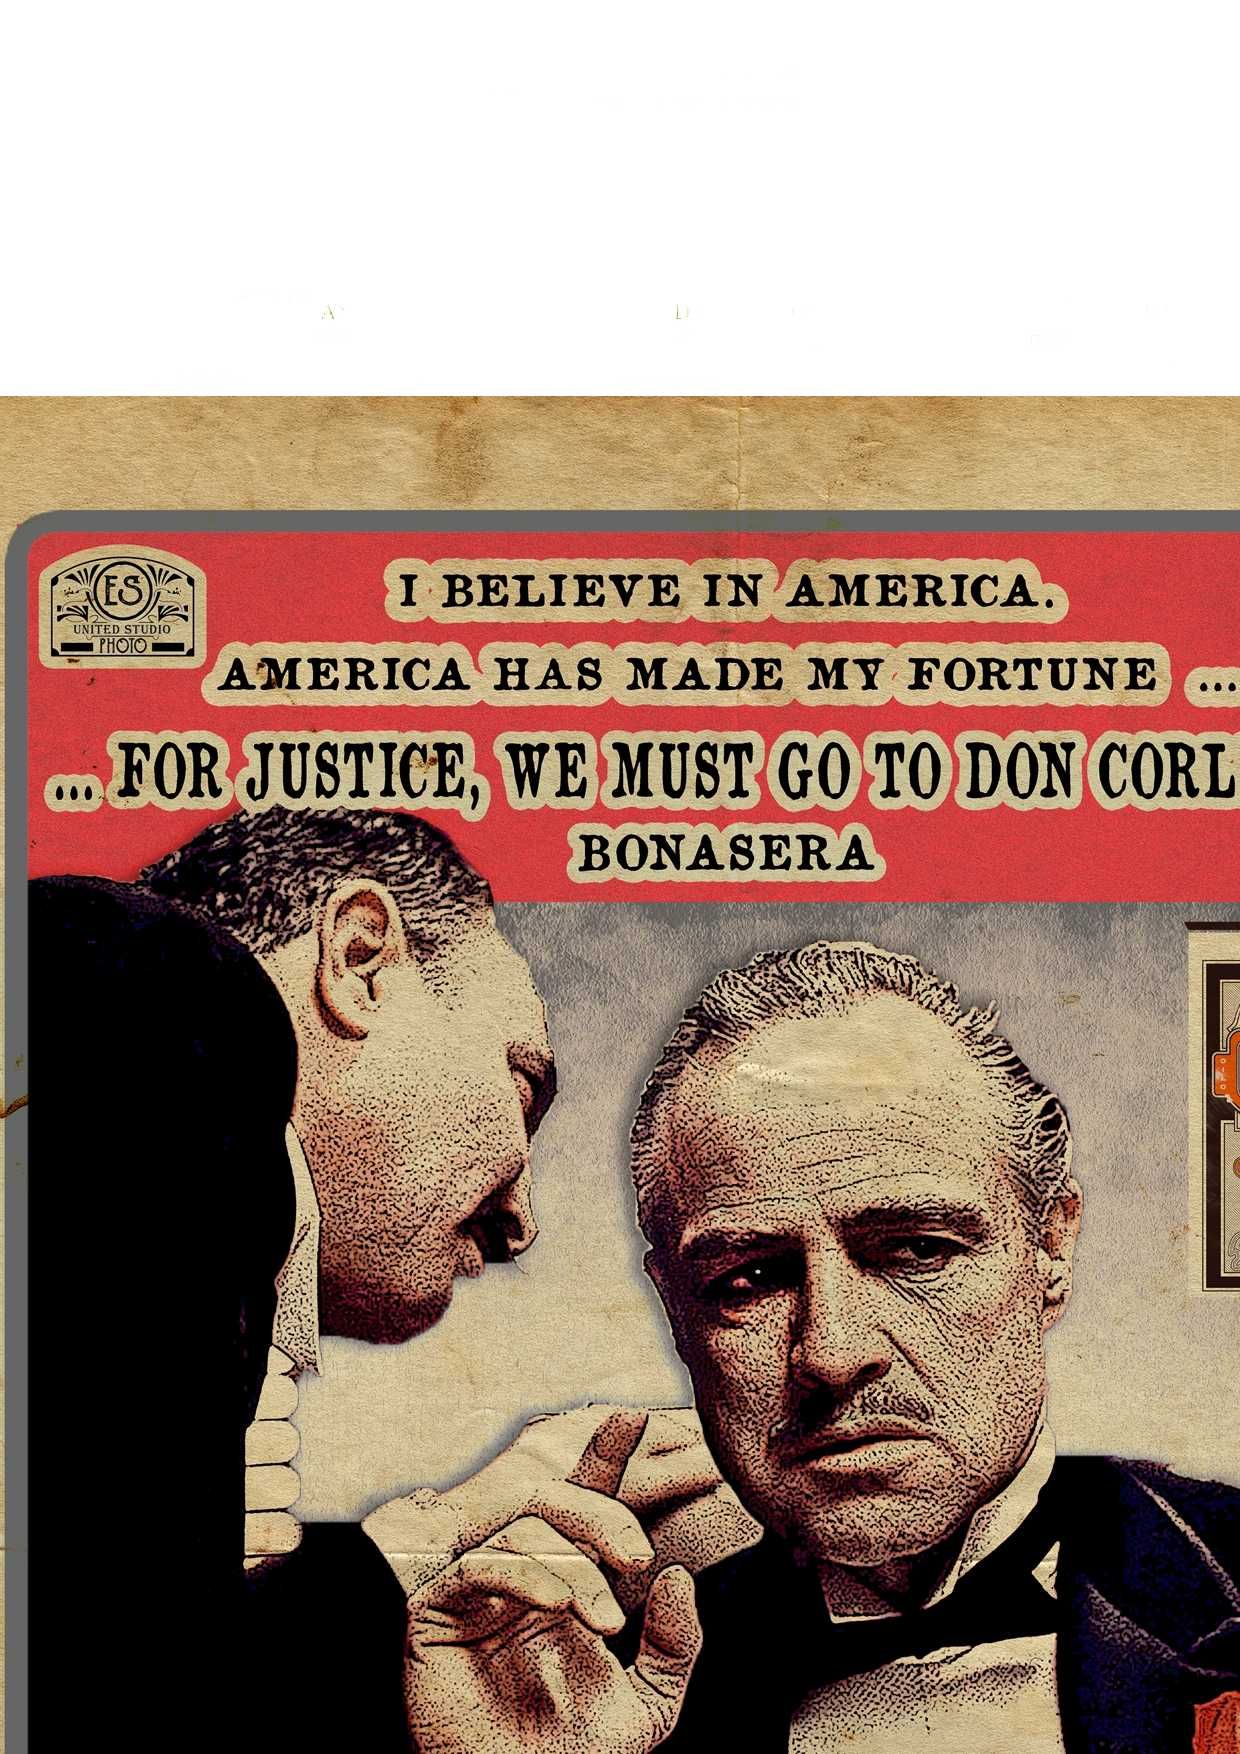 Кръстникът Дон Вито Корлеоне постер плакат The Godfather